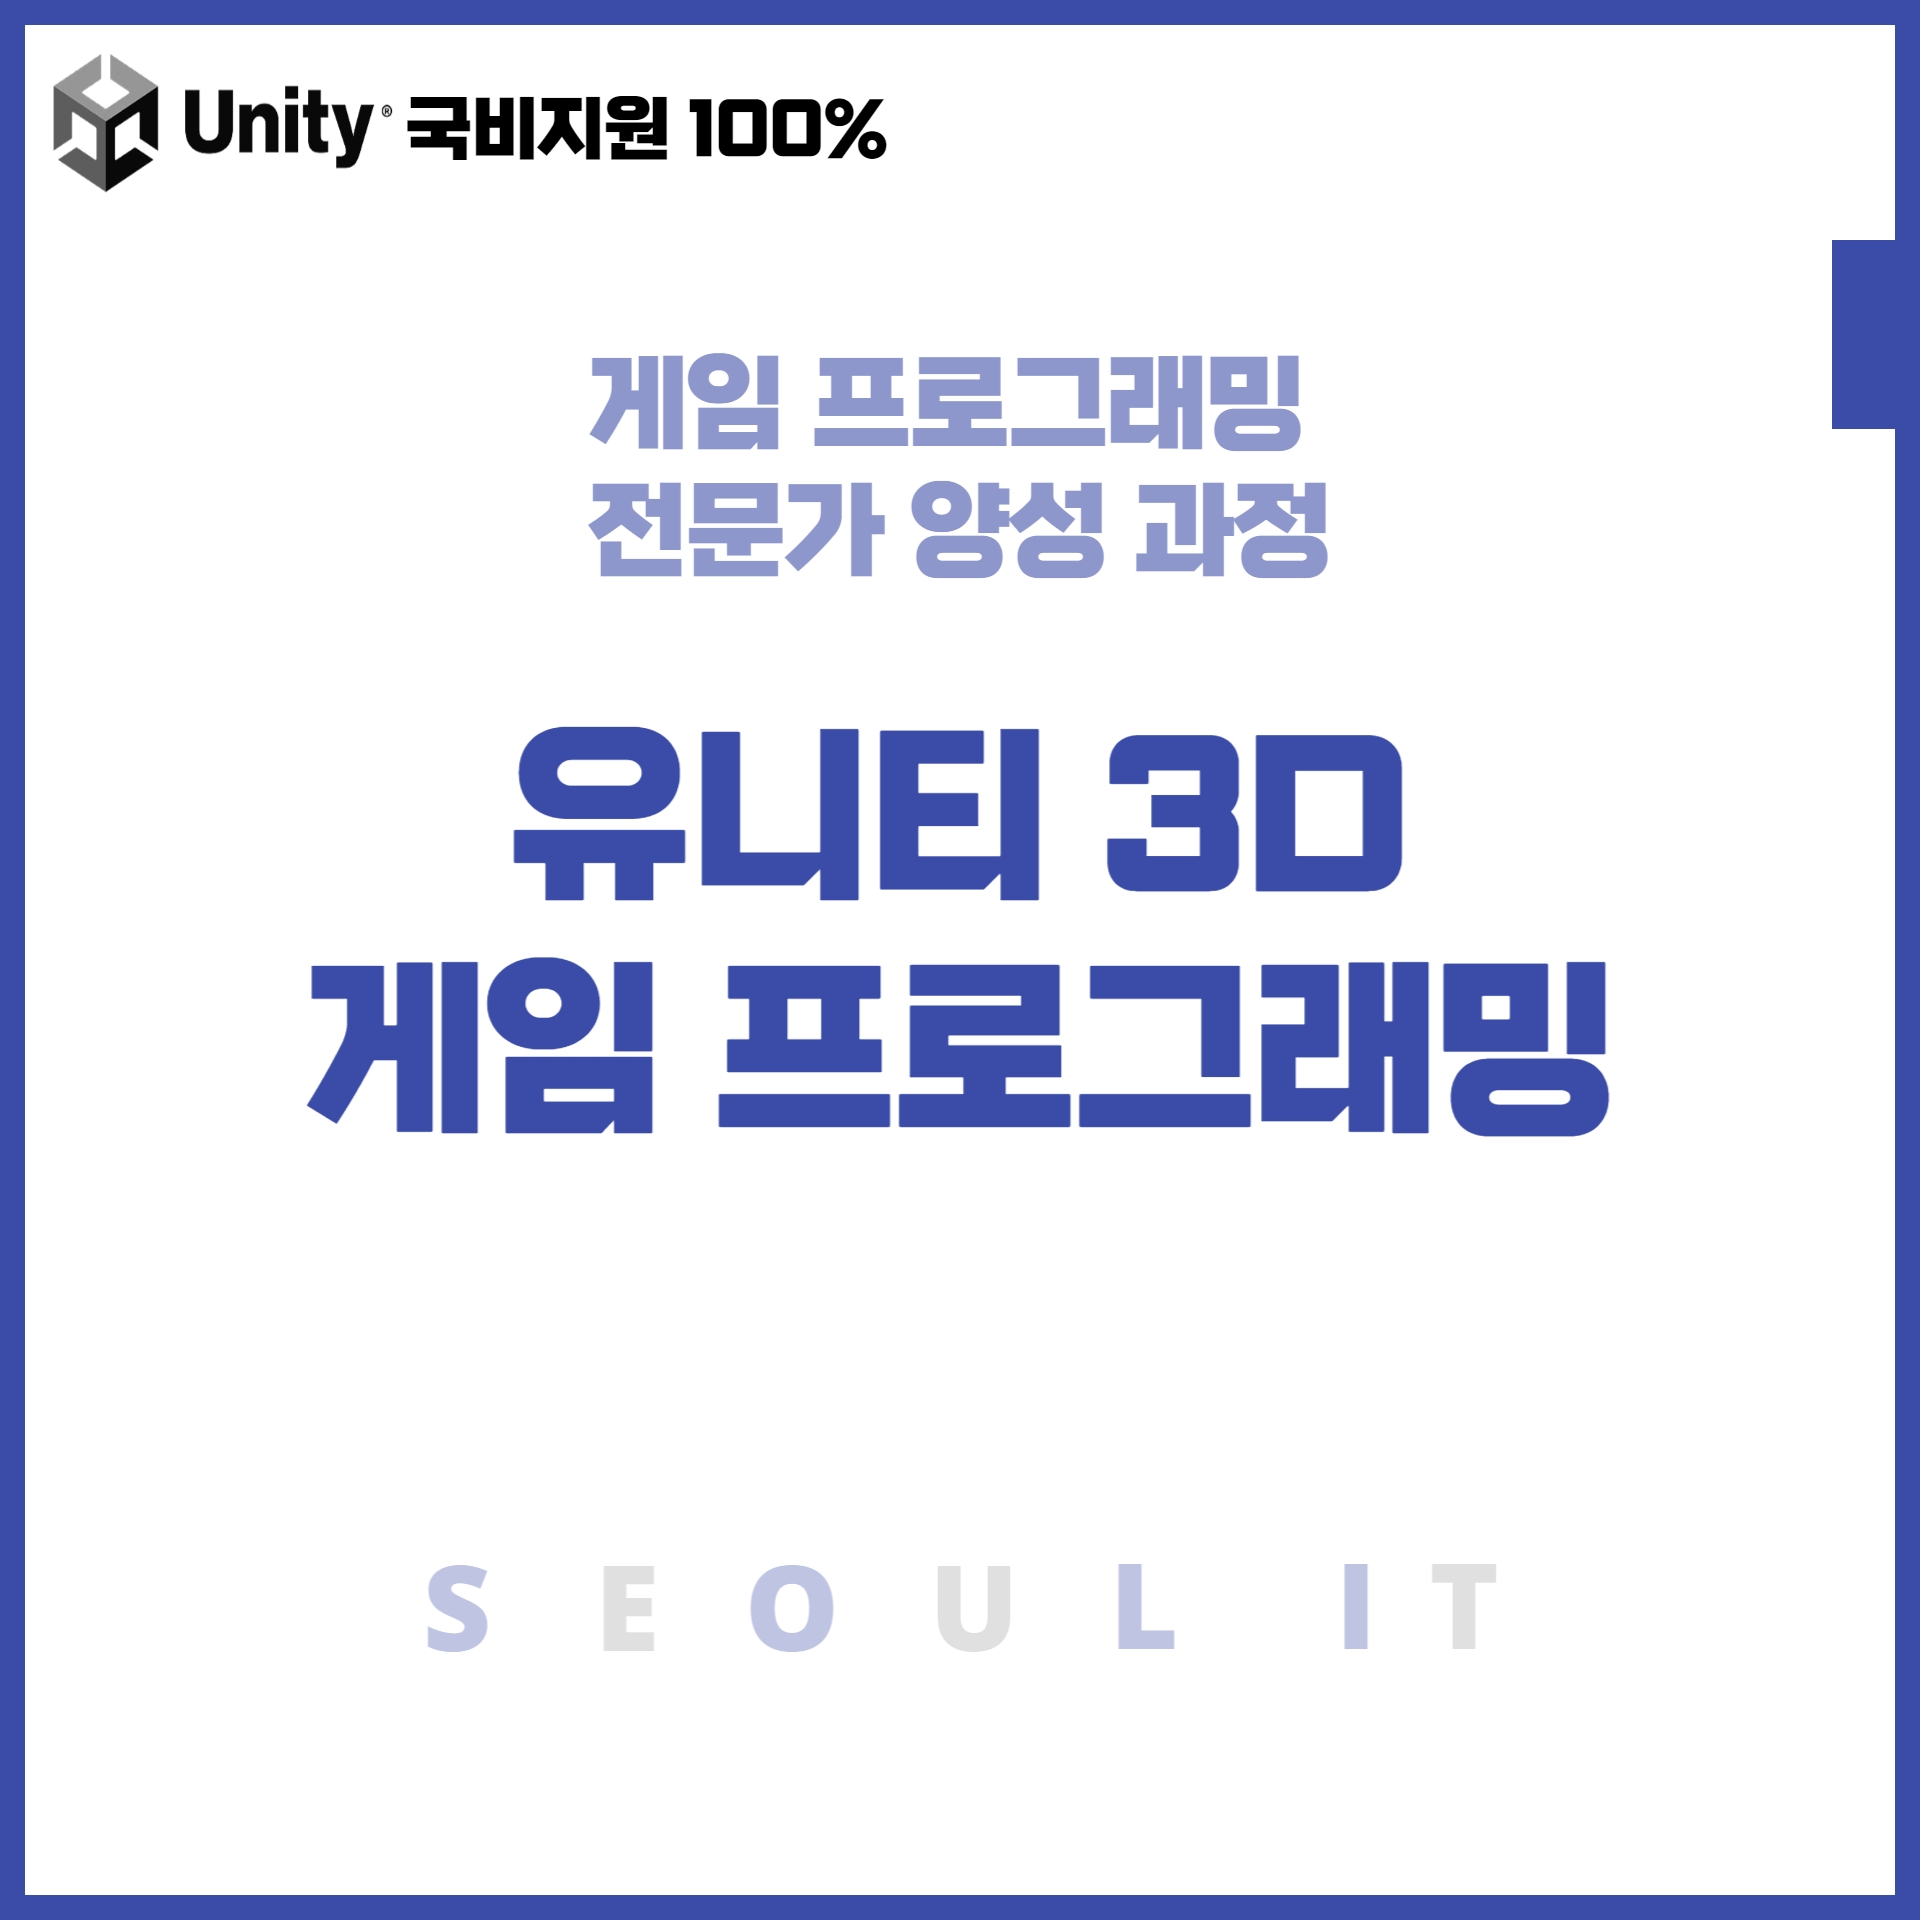 (게임콘텐츠제작) 유니티(Unity) 2D, 3D게임프로그래밍 제작 실무자 양성